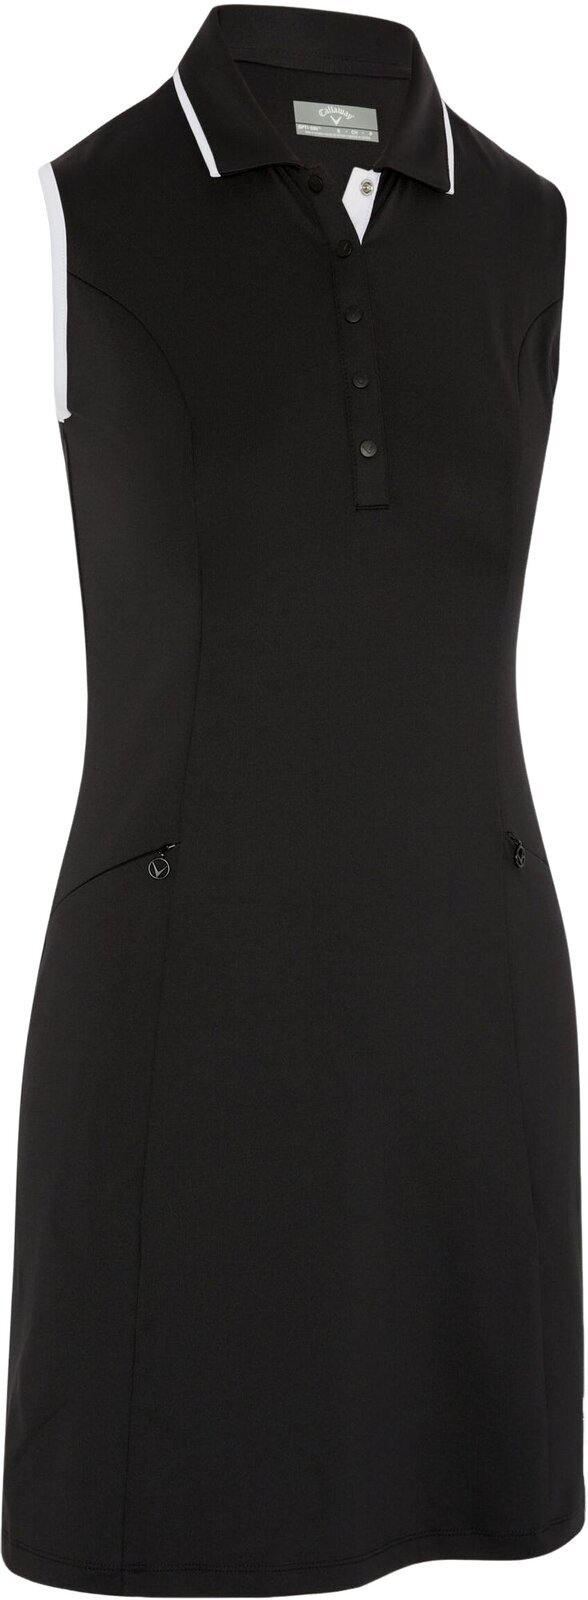 Skirt / Dress Callaway Womens Sleeveless Dress With Snap Placket Caviar XL